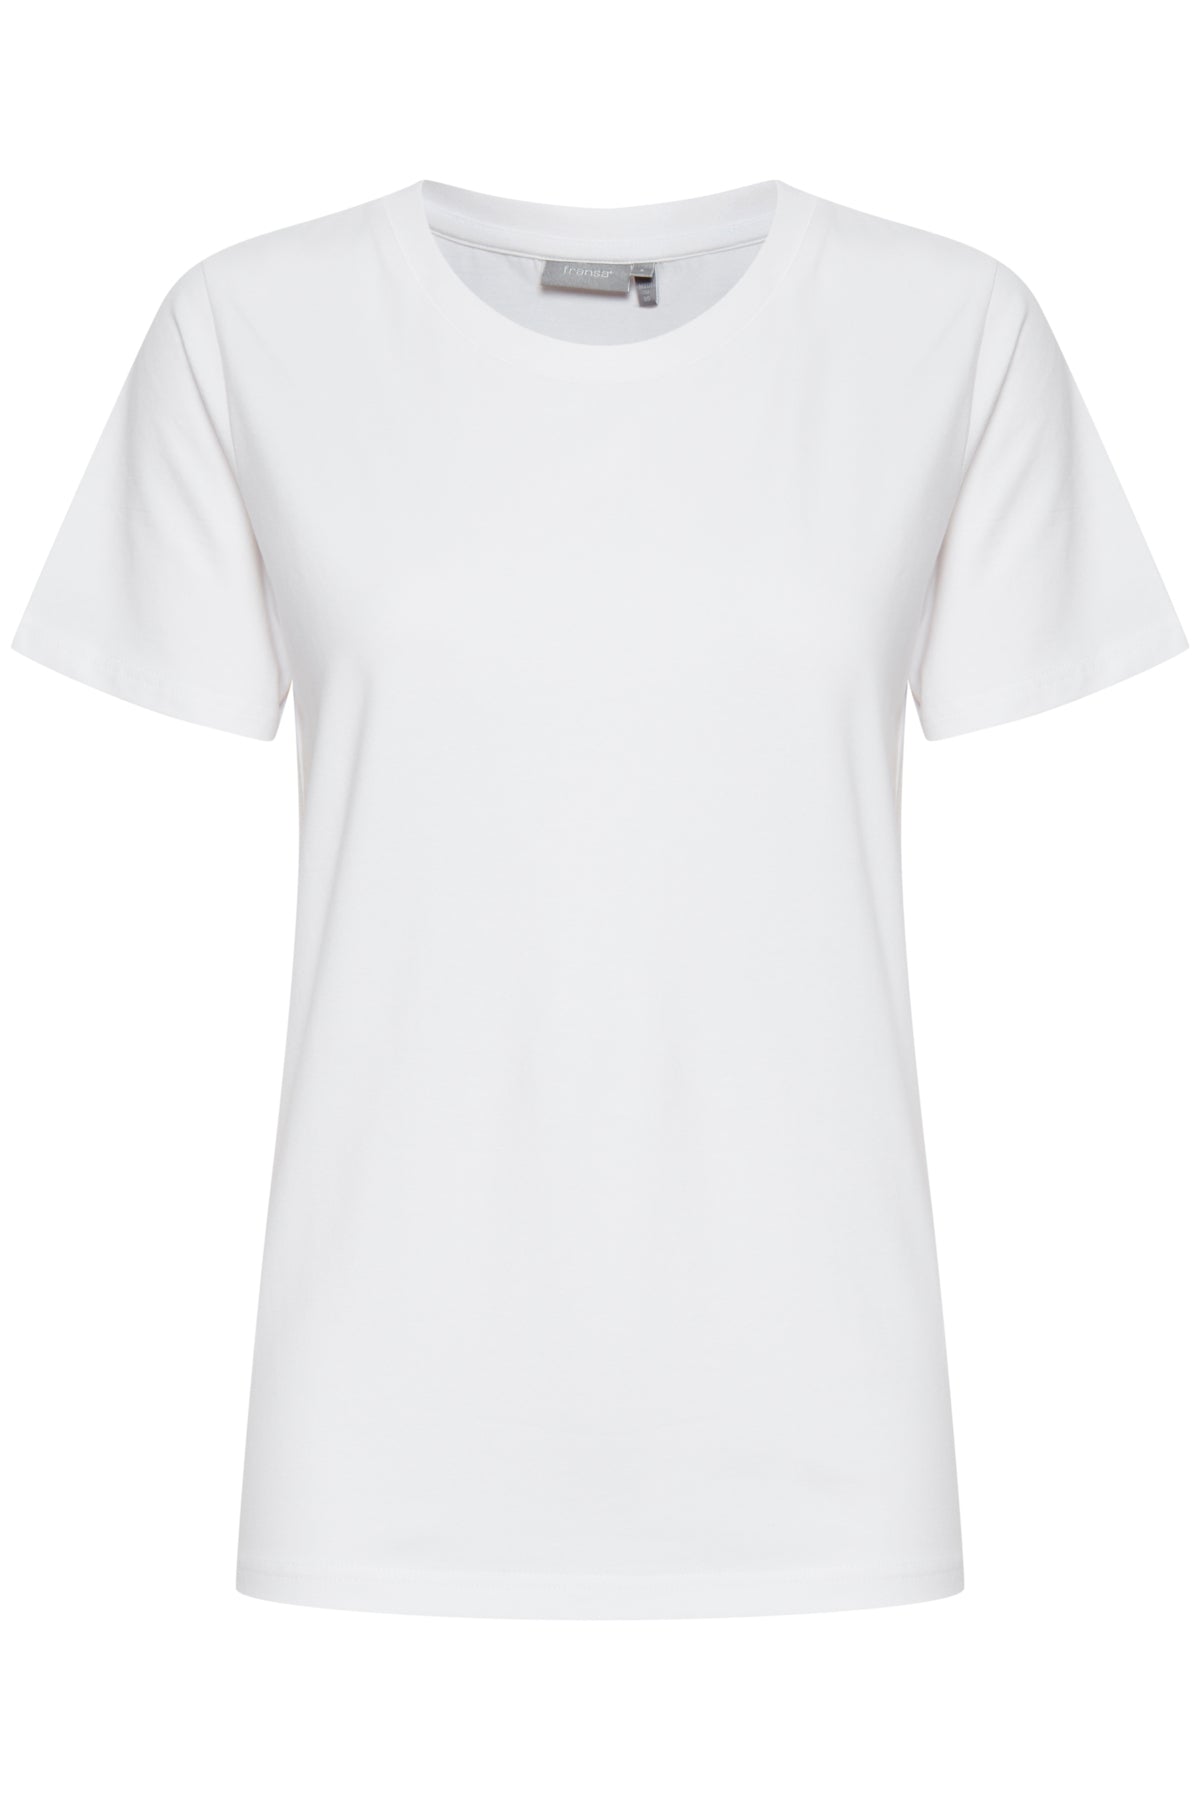 Fransa Zashoulder 1 T-shirt, White